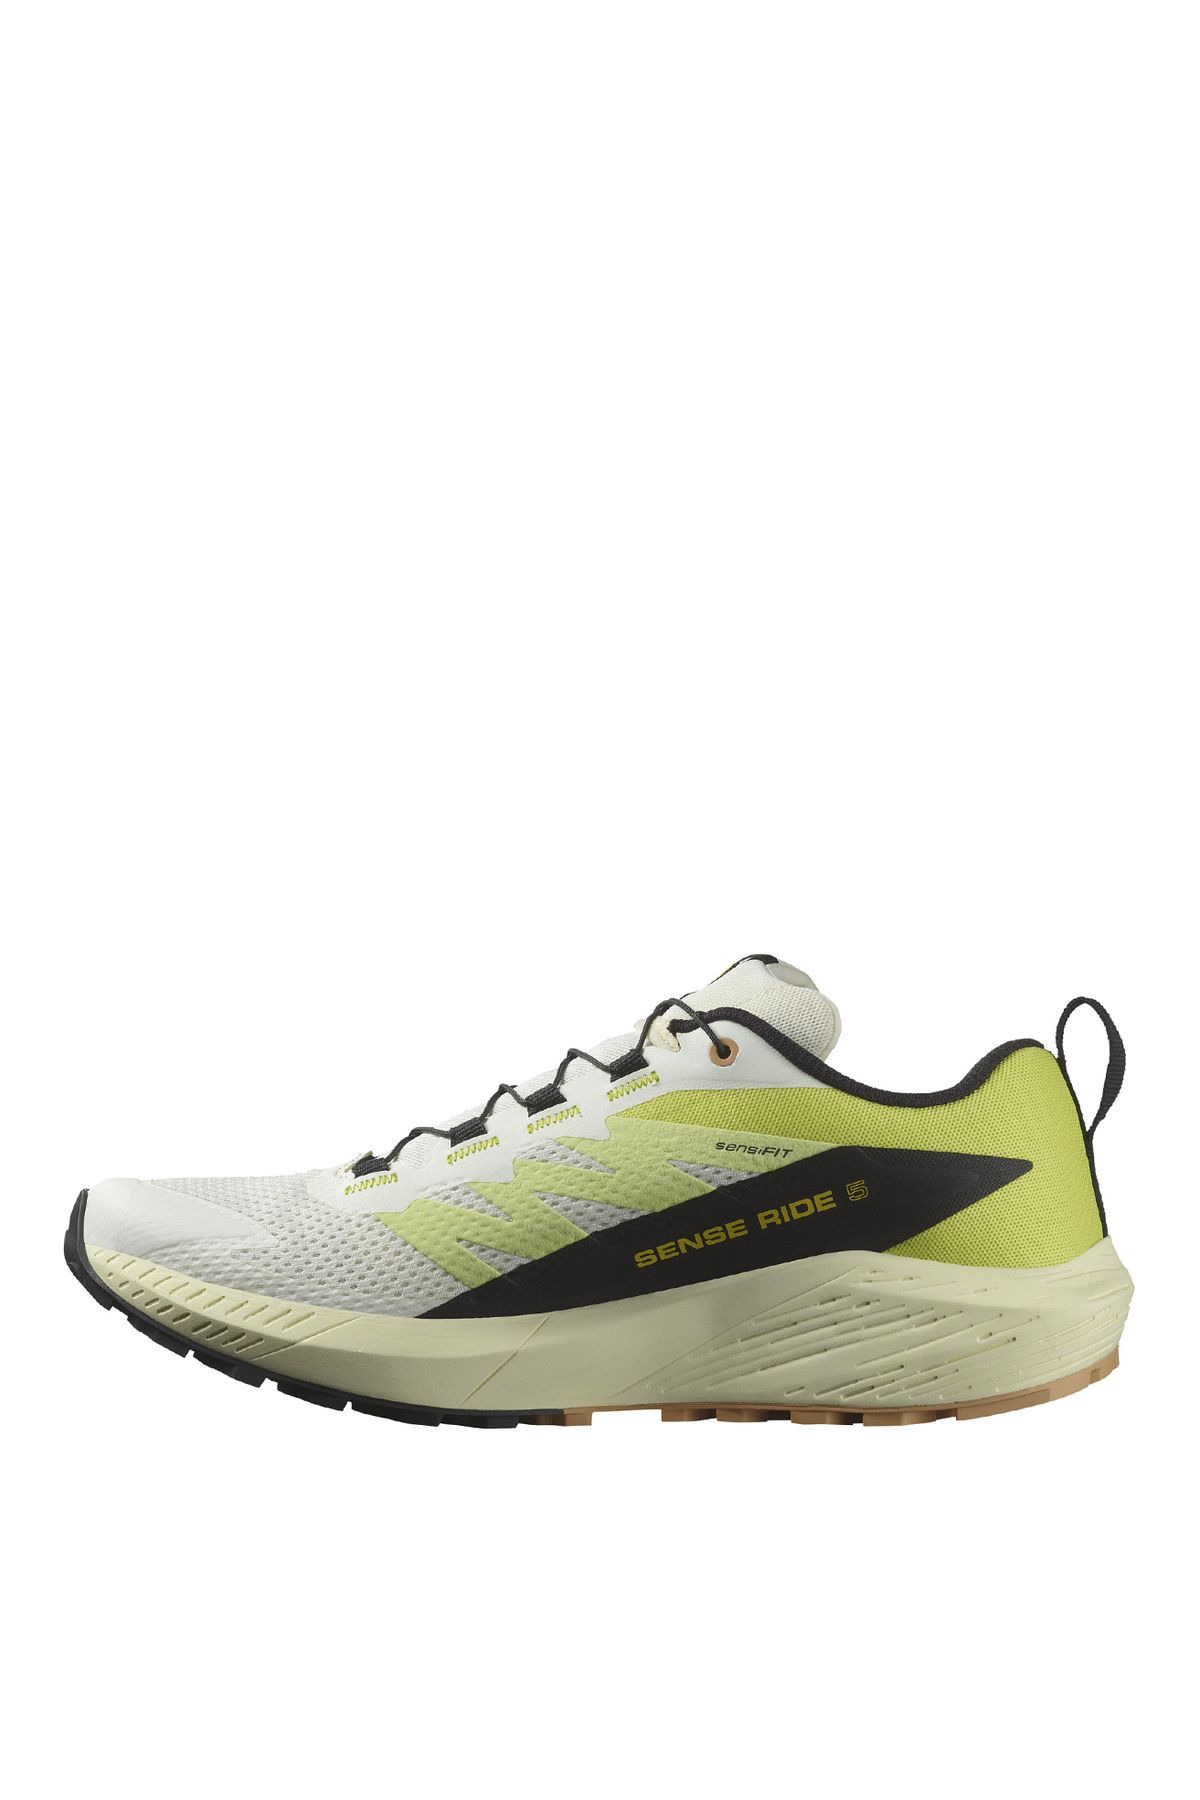 Salomon Beyaz - Sarı Erkek Koşu Ayakkabısı L47458400_SENSE RIDE 5